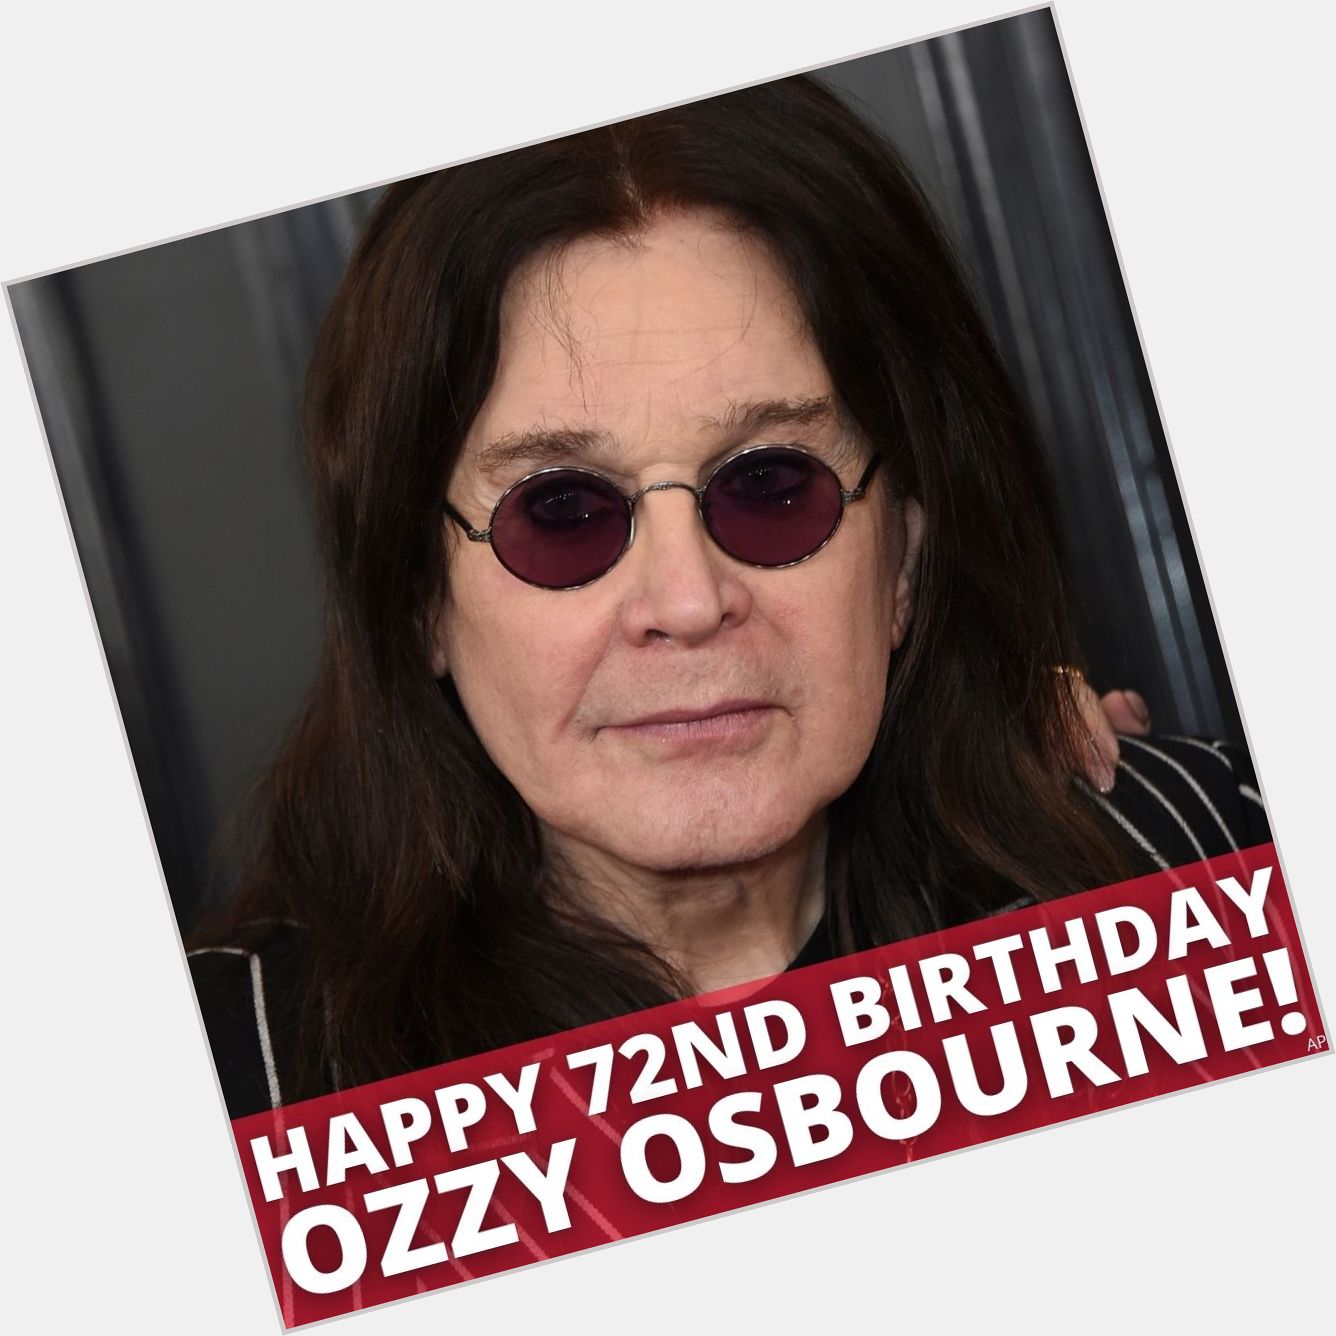 Ozzy Osbourne is turning 72 today! Happy Birthday, Ozzy! 